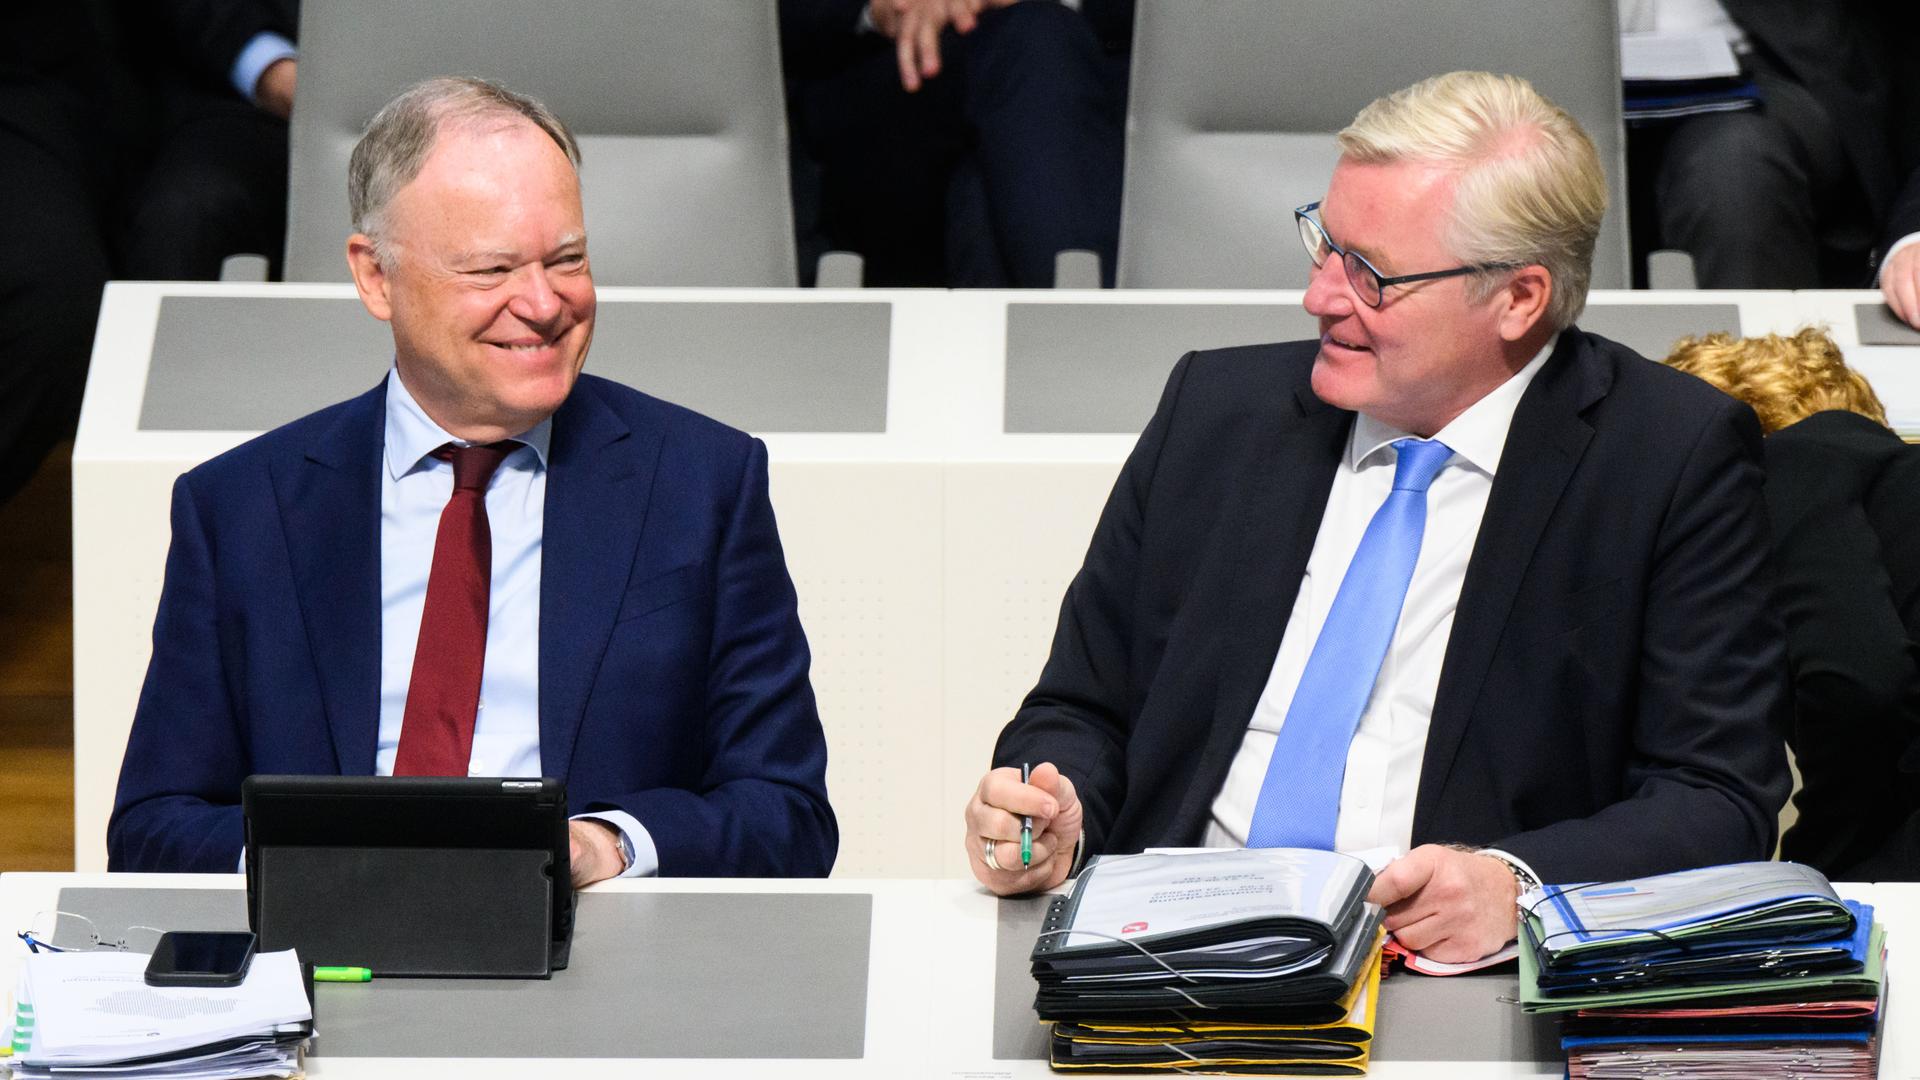 Noch sind sie Koalitionspartner: Stephan Weil (l, SPD), Ministerpräsident Niedersachsen, und Bernd Althusmann (CDU), Wirtschaftsminister Niedersachsen und CDU-Spitzenkandidat bei der Landtagswahl 2022, bei einer Sitzung des Landtags